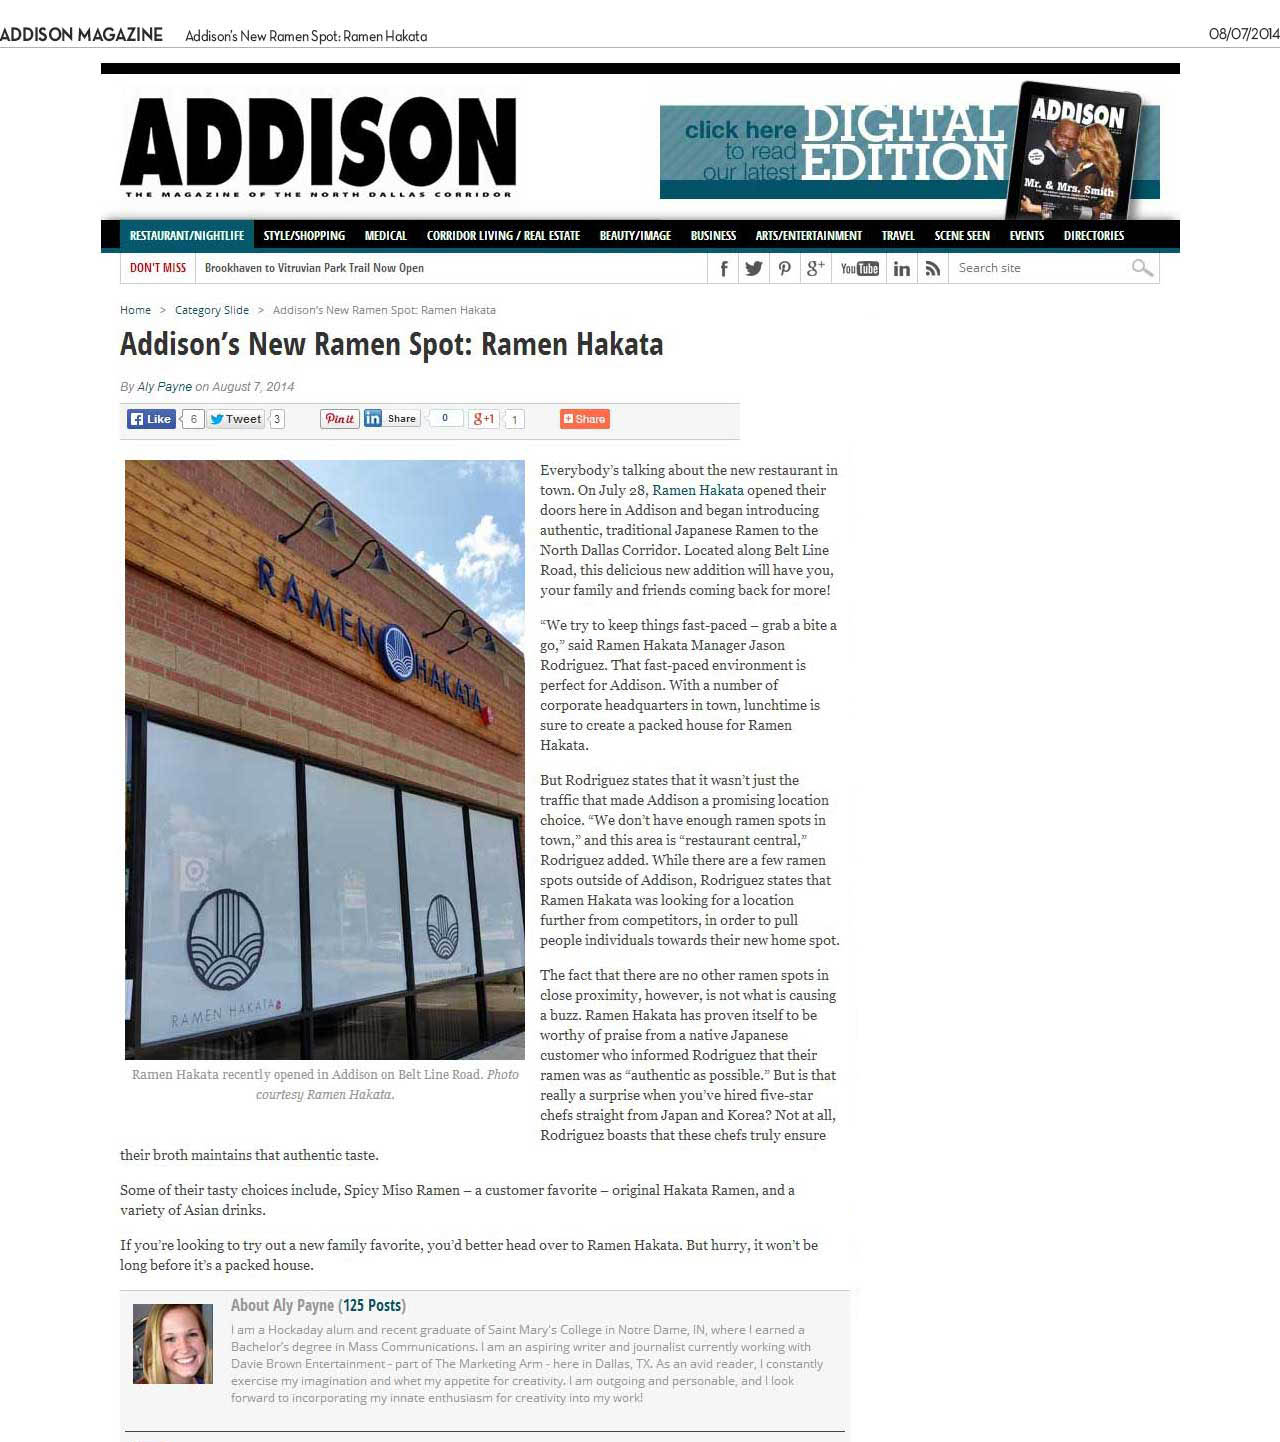 addison-magazine-08072014